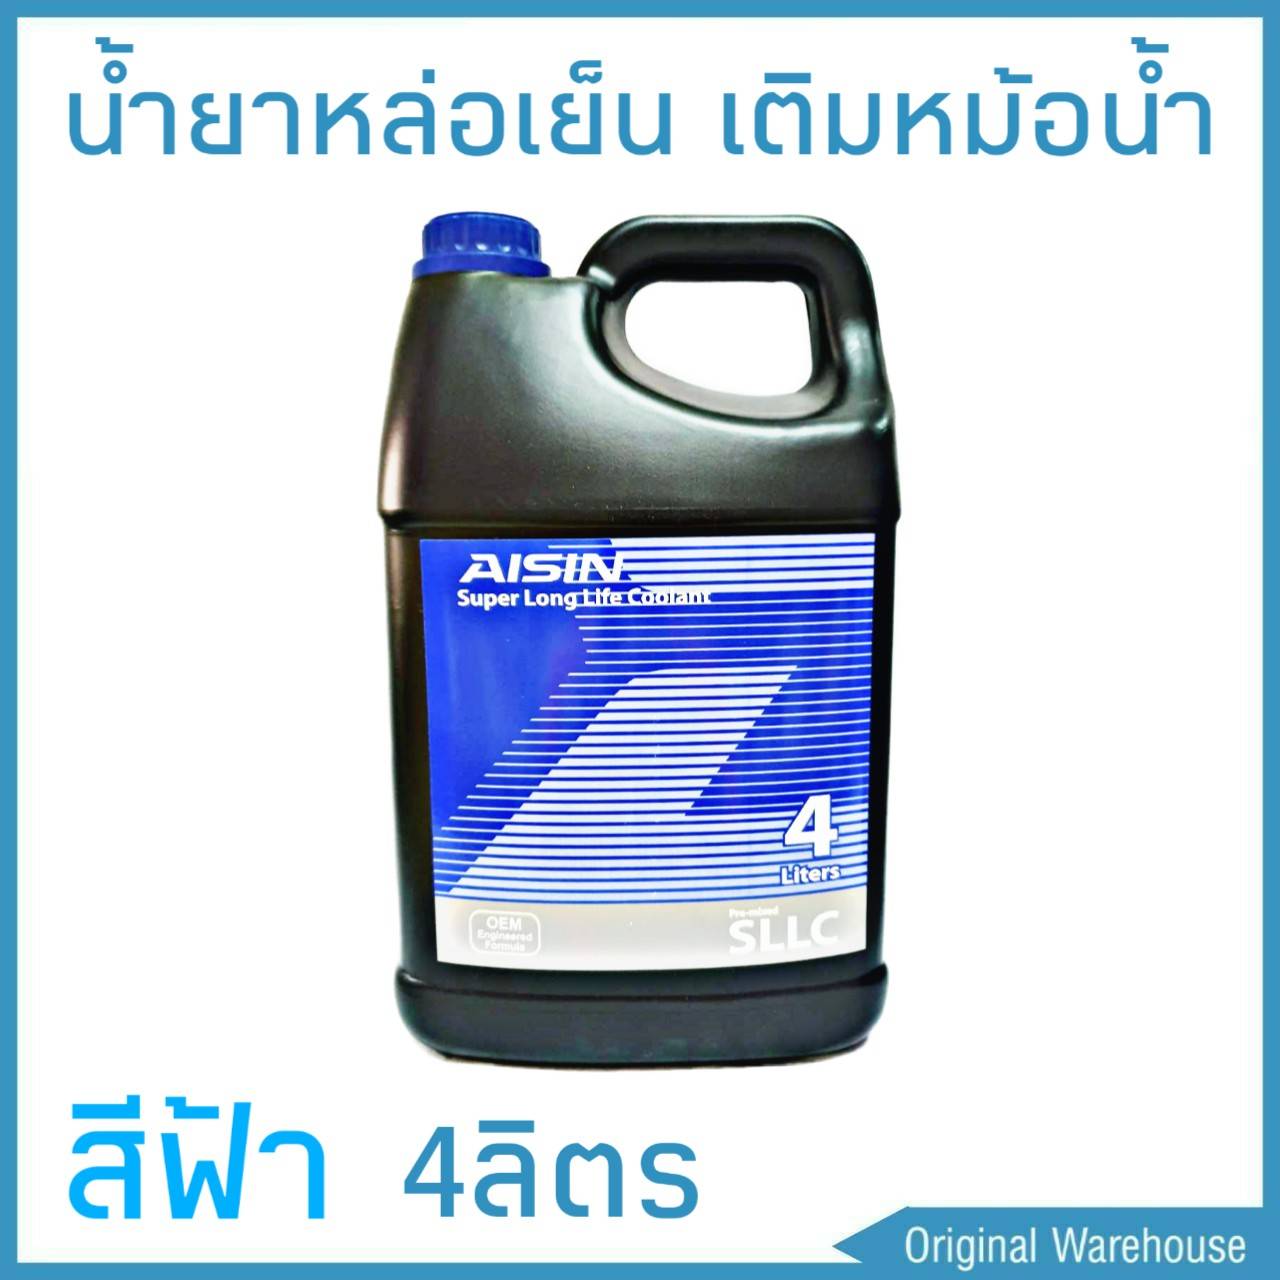 น้ำยาหม้อน้ำ AISIN COOLANT สีฟ้า 4ลิตร น้ำยาหล่อเย็นหม้อน้ำ ไอซิน